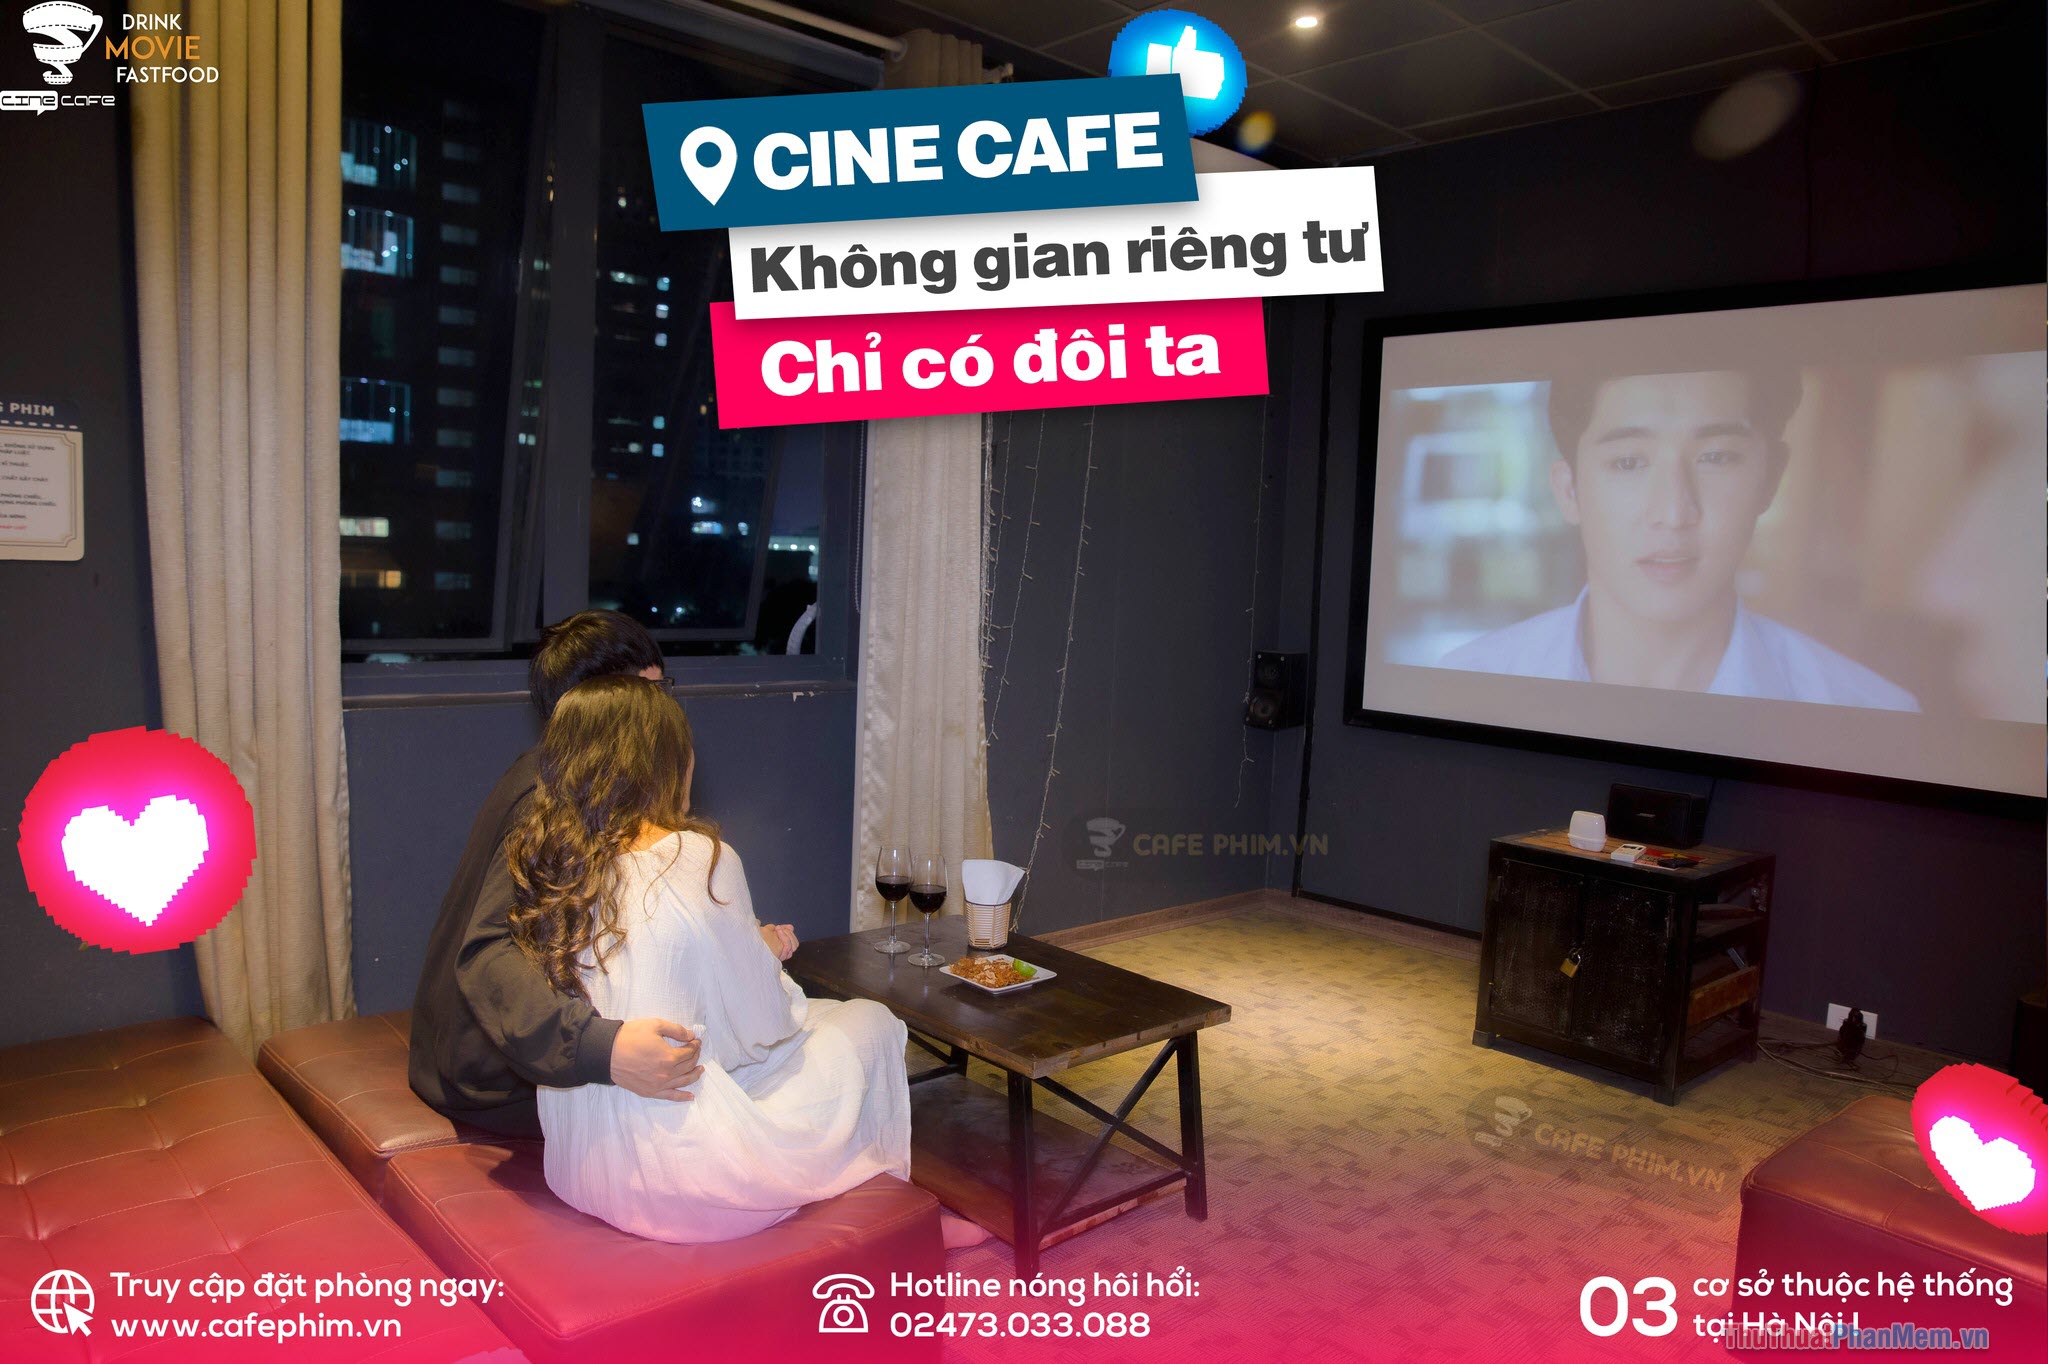 CINE CAFE – Cafe phim không gian riêng tư